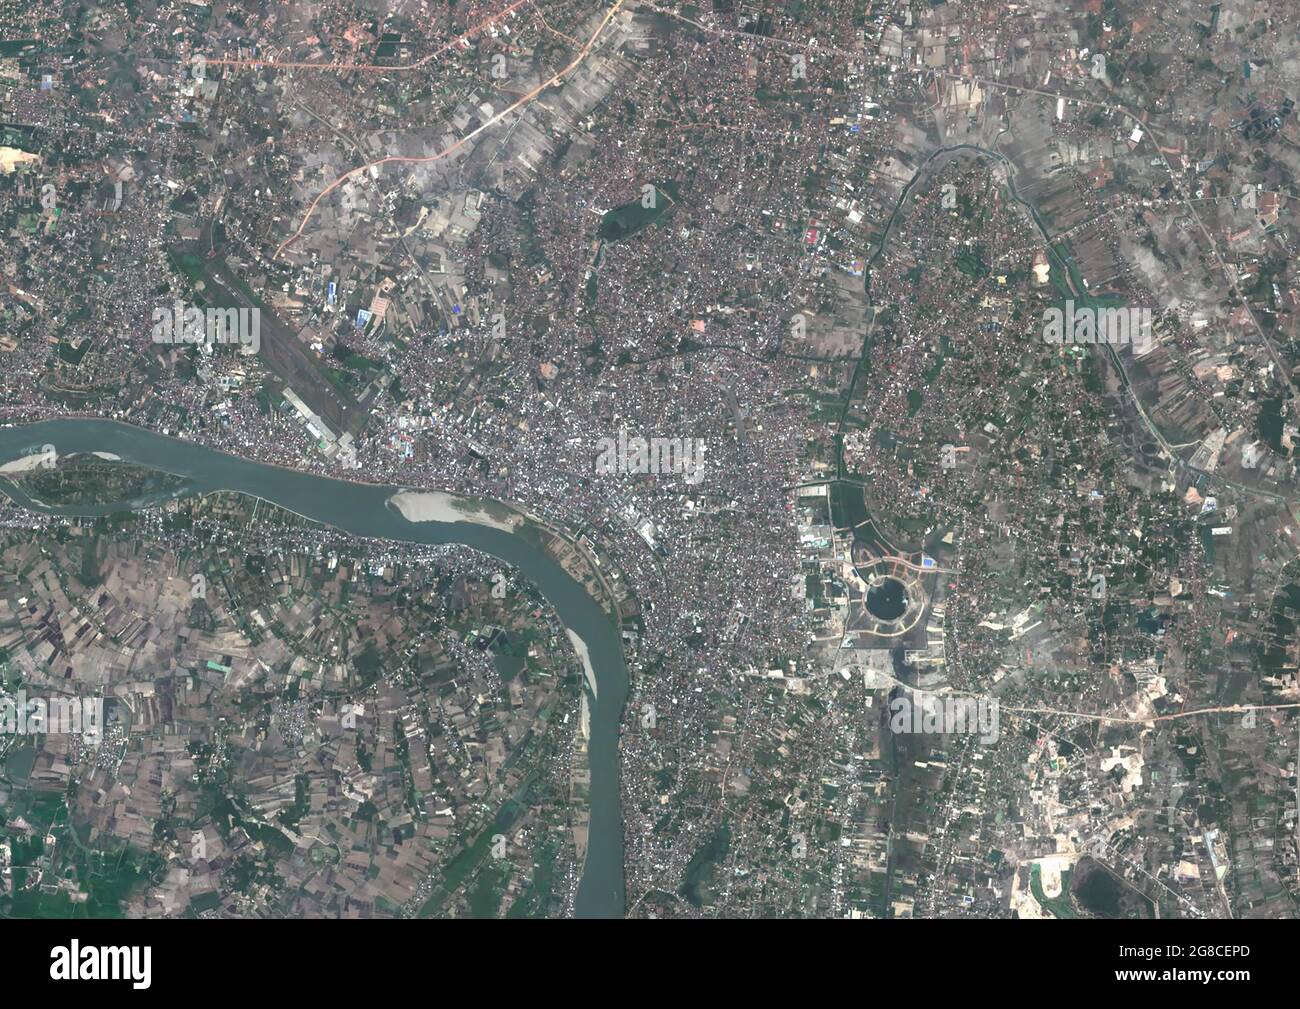 Vientiane, Capital city of Laos Stock Photo